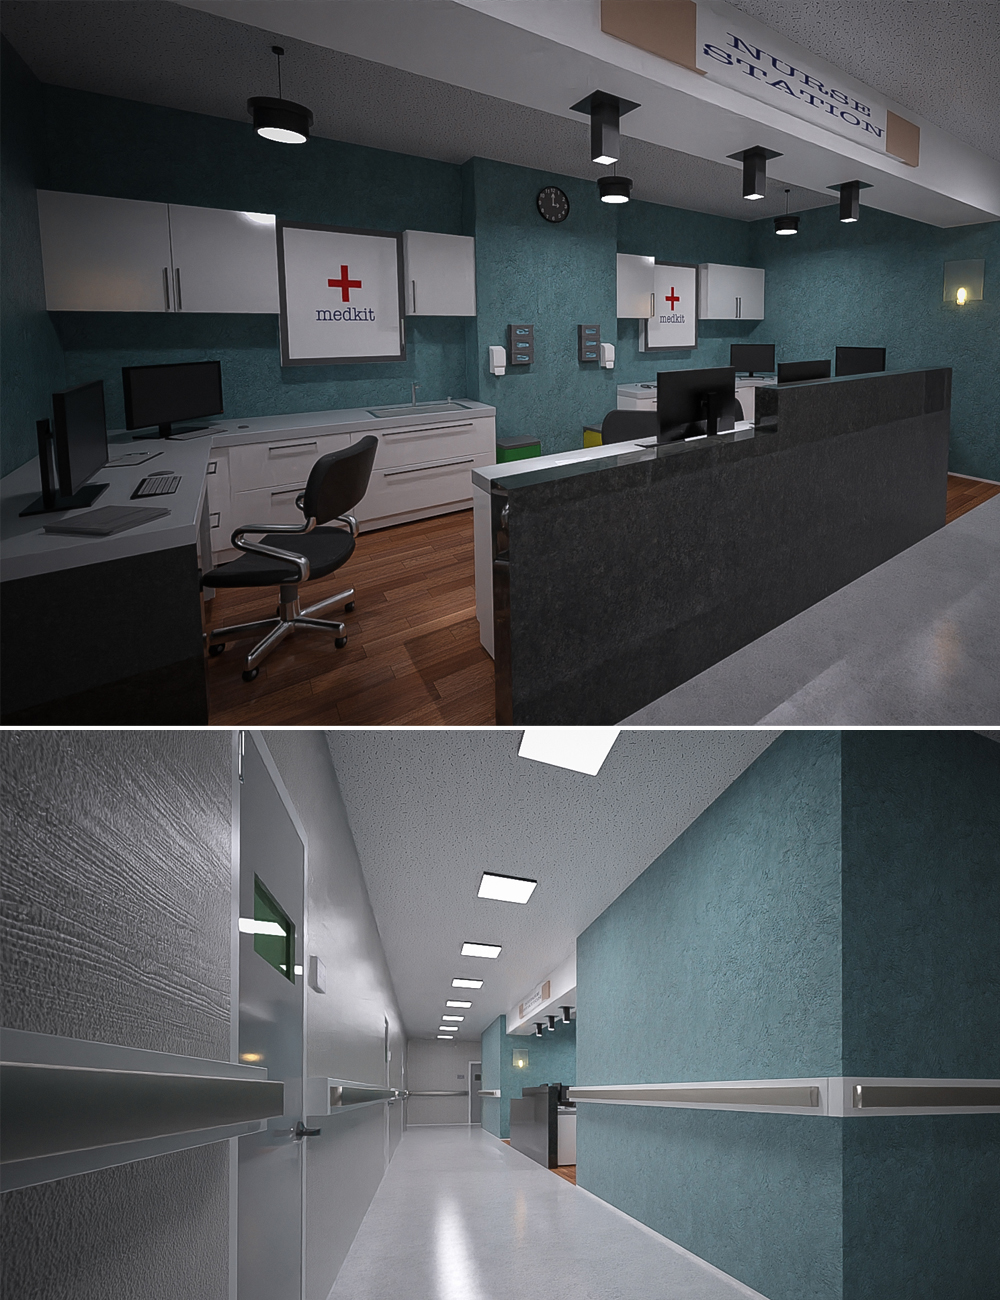 TS Hospital Nurse Station by: Tesla3dCorp, 3D Models by Daz 3D